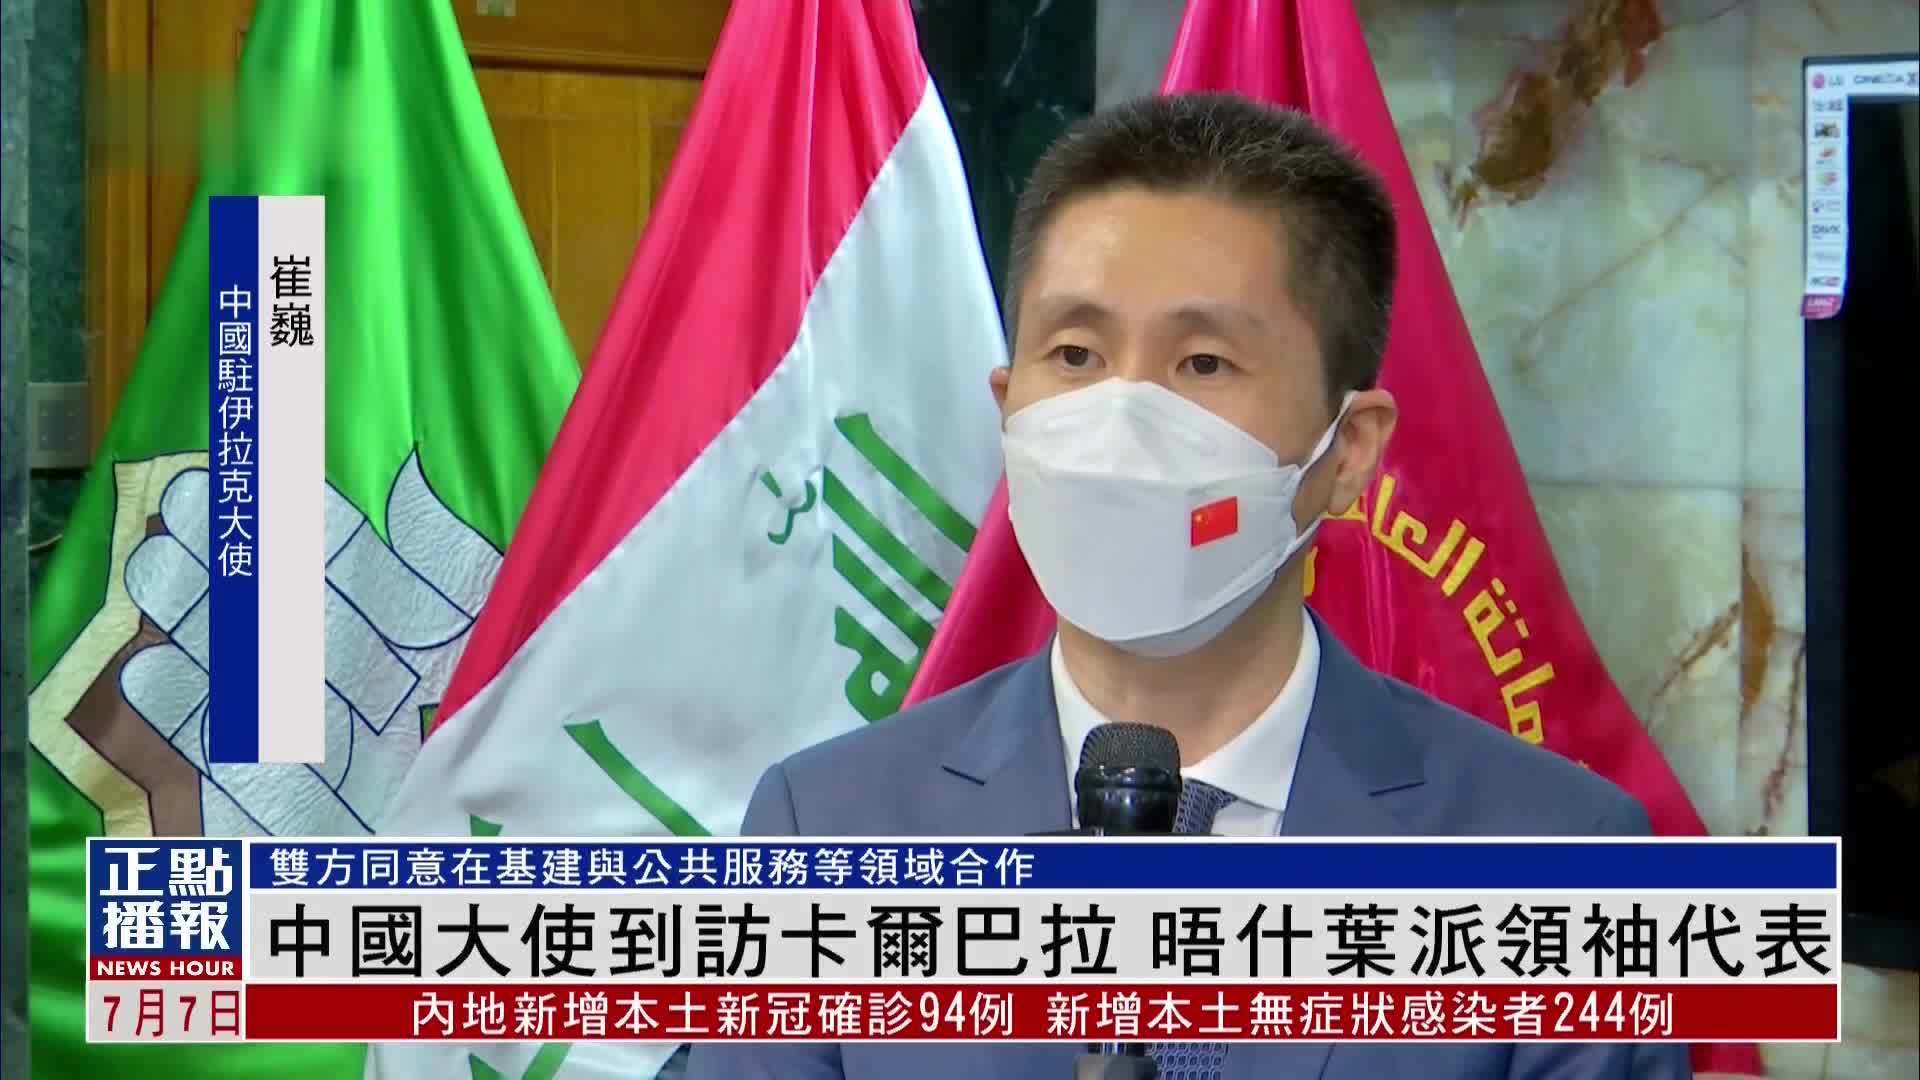 中国驻伊拉克大使到访卡尔巴拉 晤什叶派领袖代表